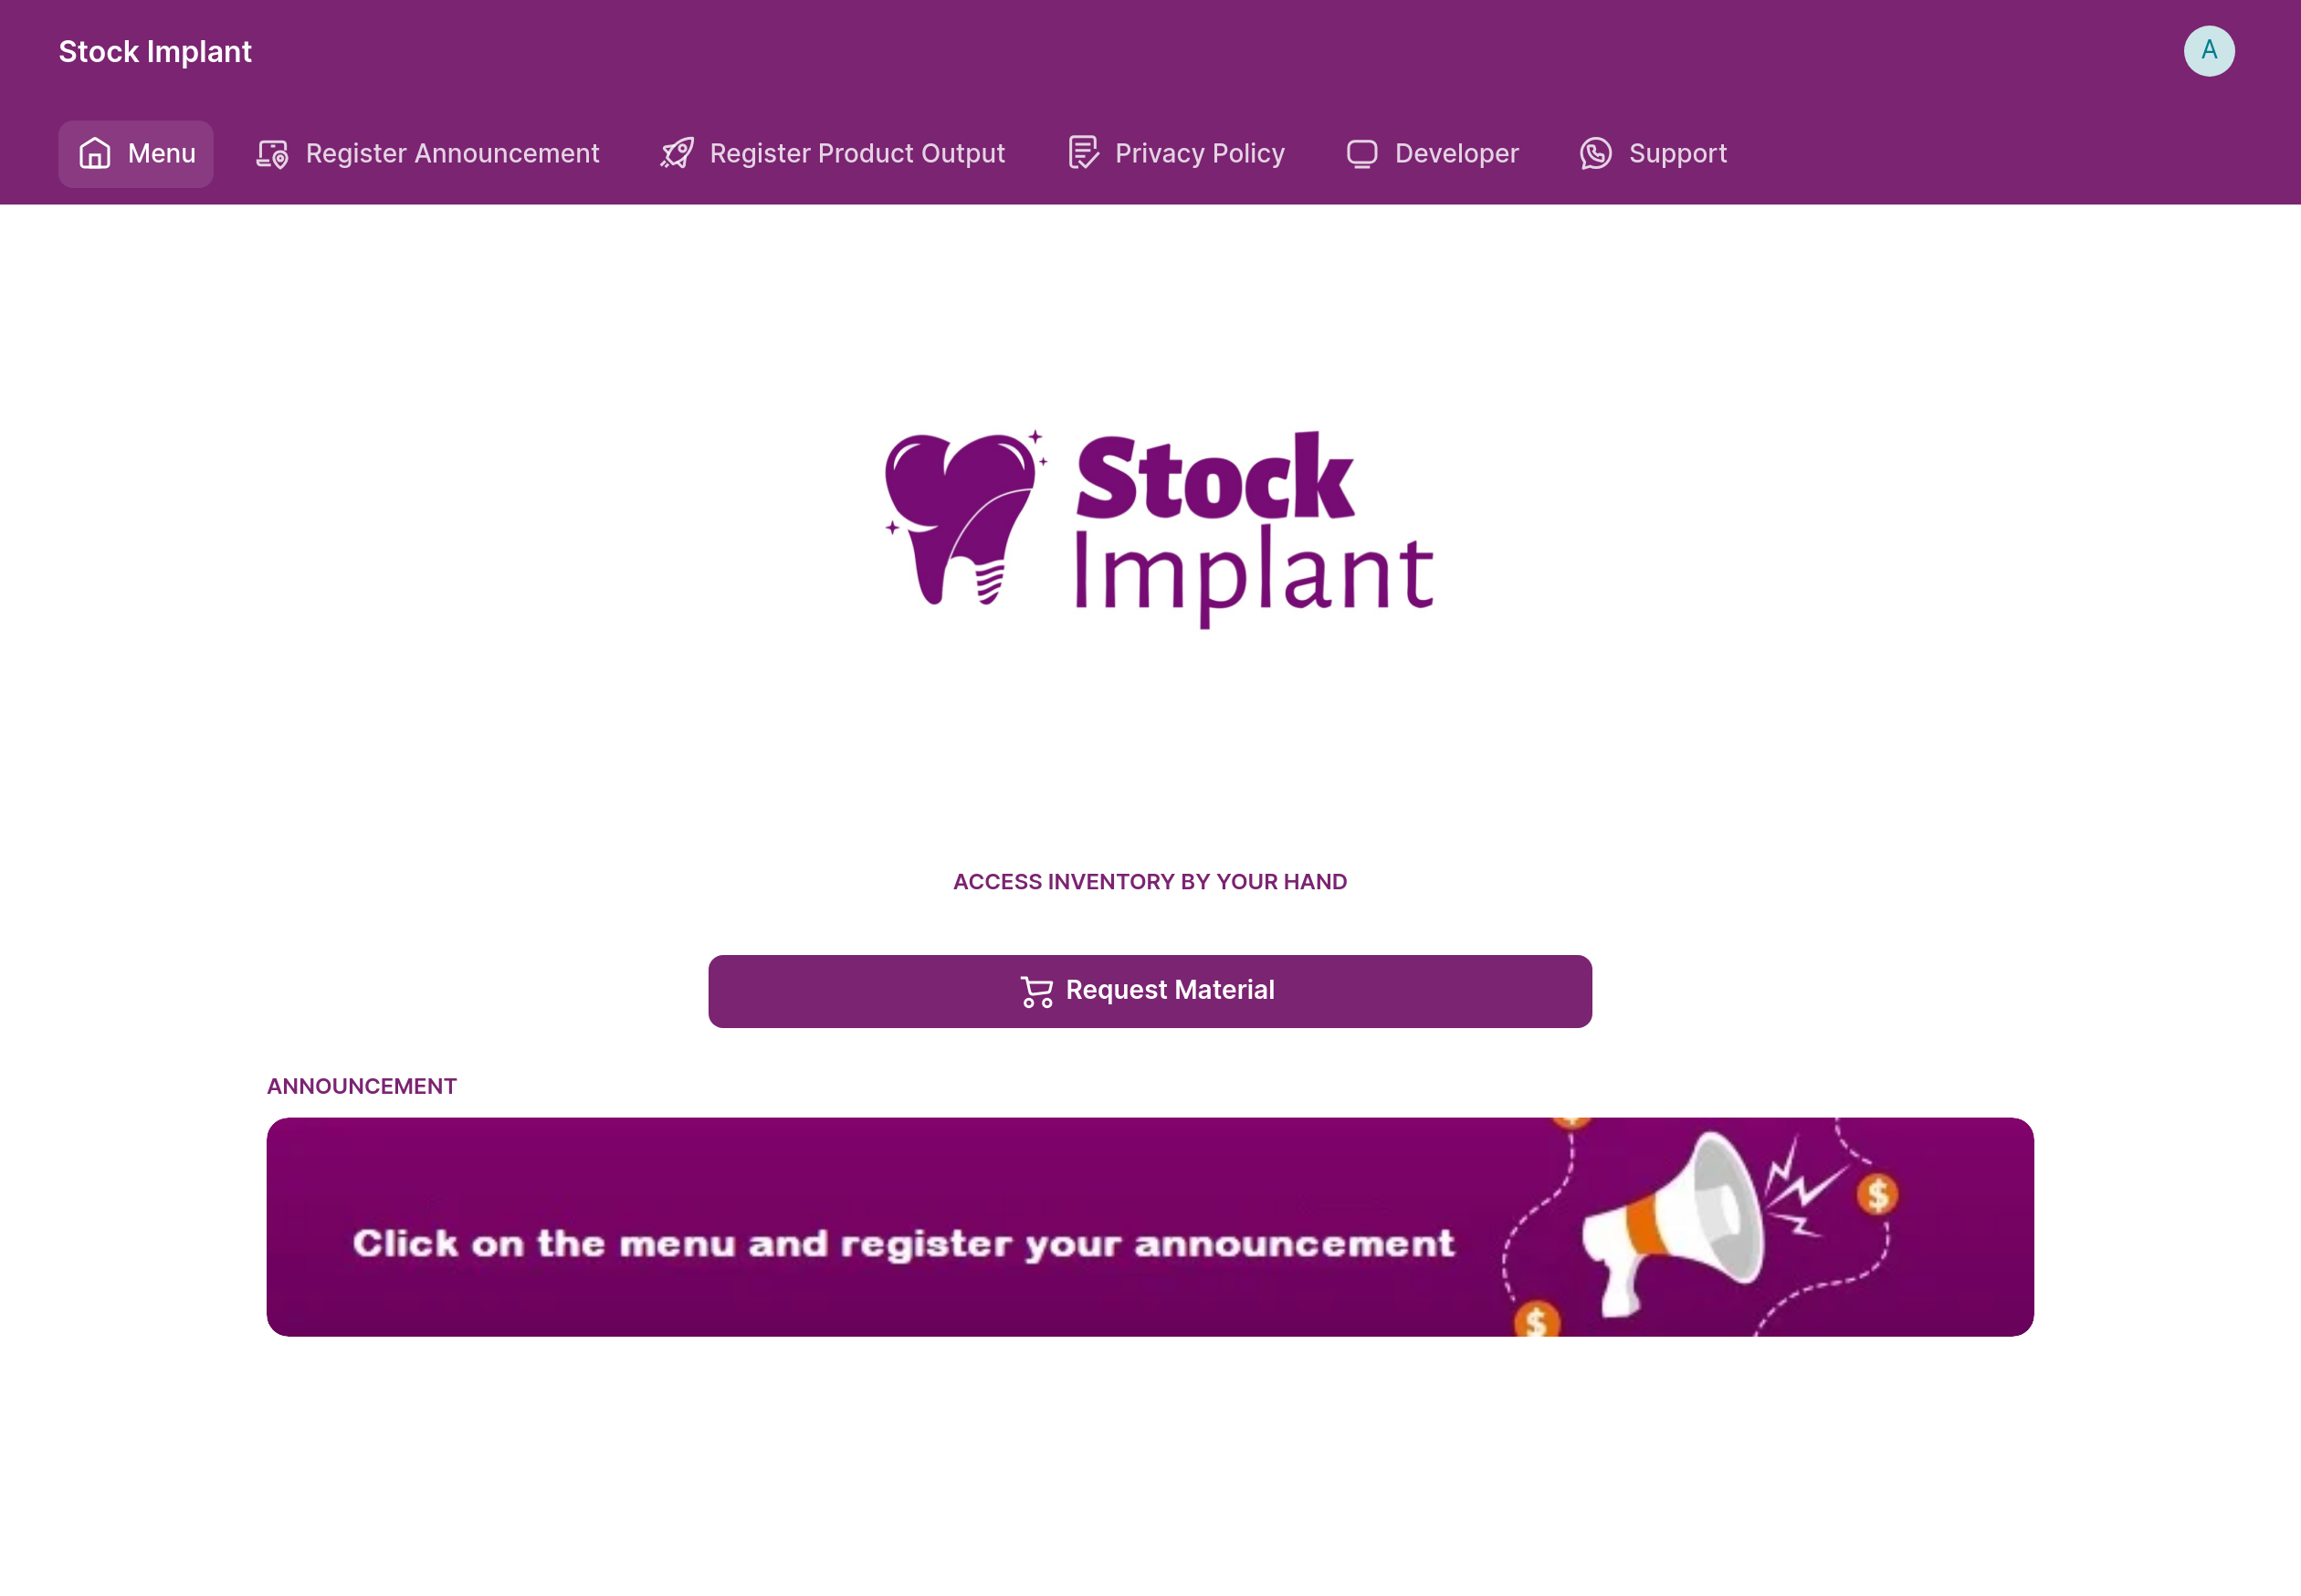 Stock Implant